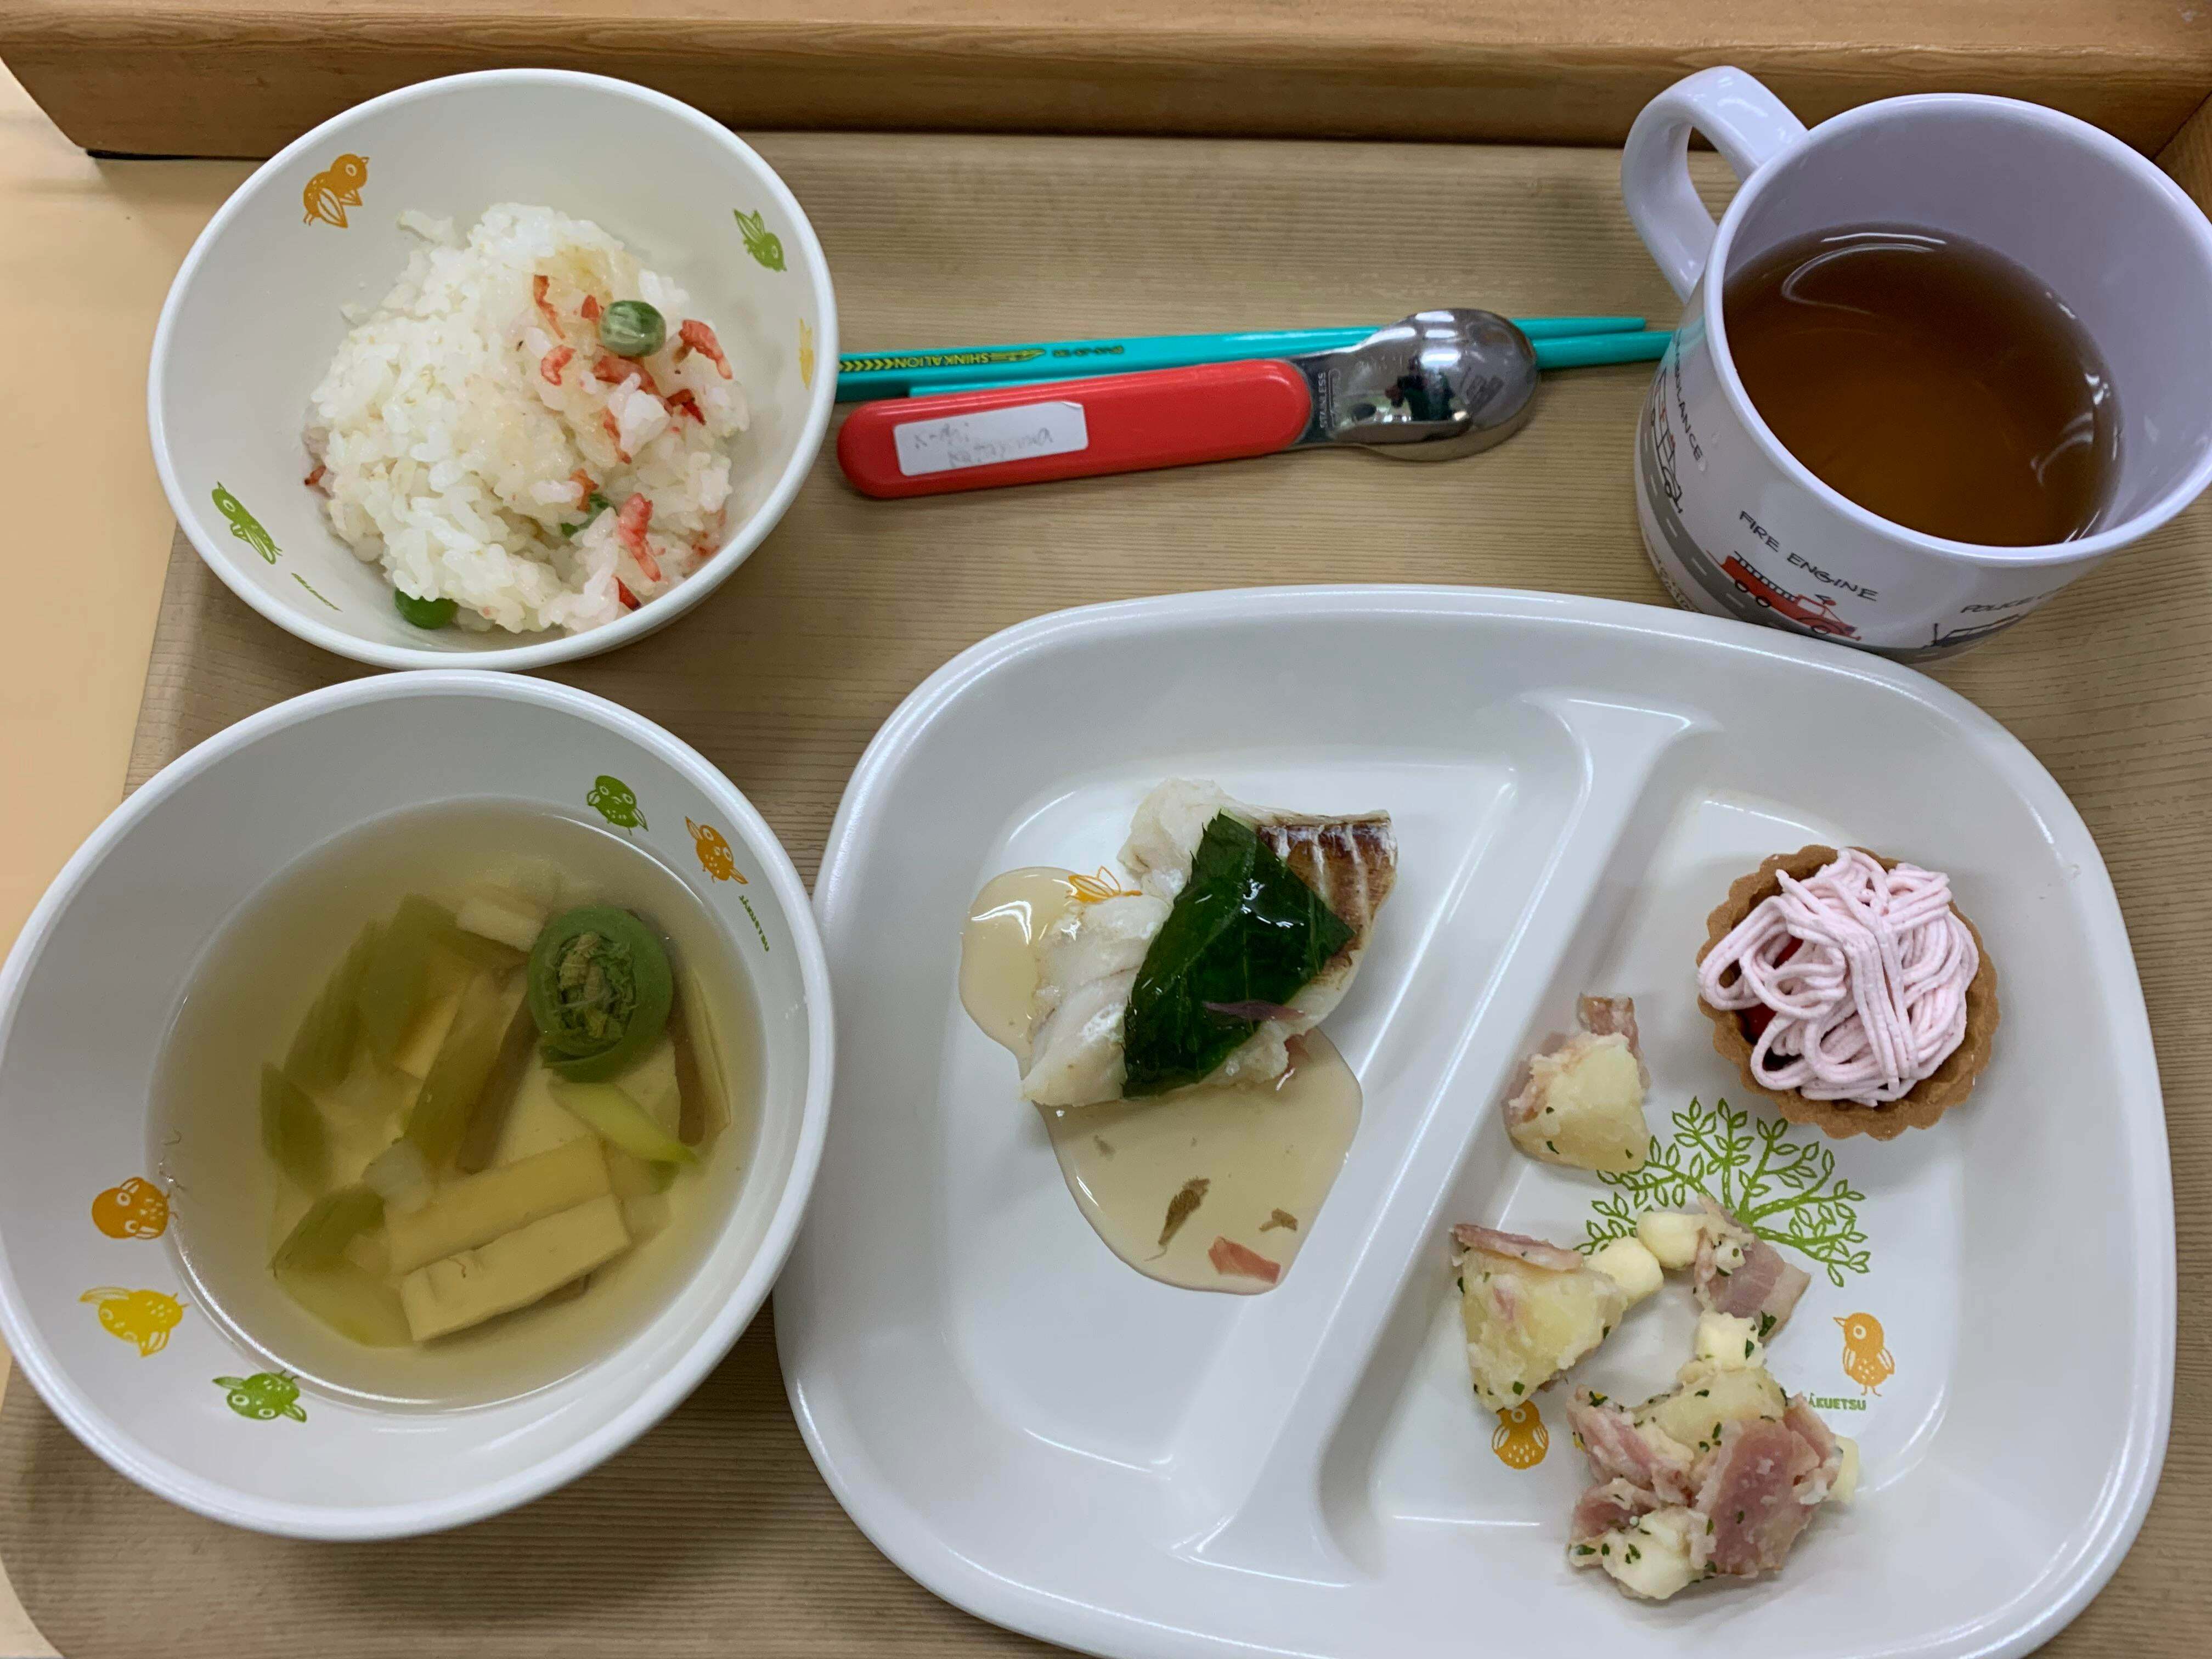 déjeuner scolaire dans un jardin d'enfants au japon (bonus bentos)